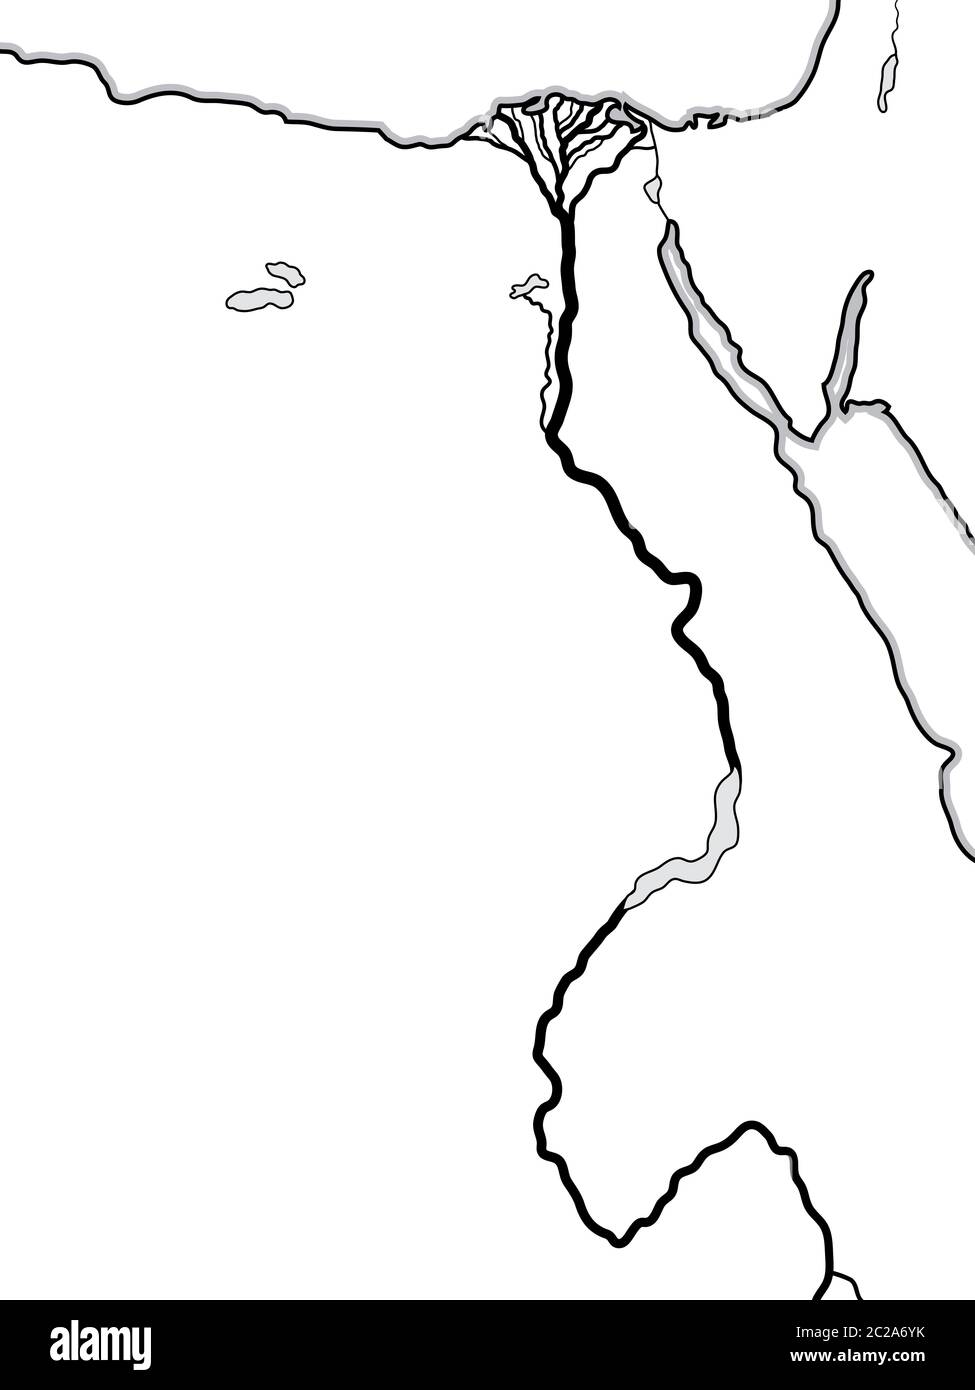 Weltkarte von ÄGYPTEN und LIBYEN: Nordafrika, Unterägypten und Oberägypten, der Nil und sein Delta. Geografische Karte. Stockfoto